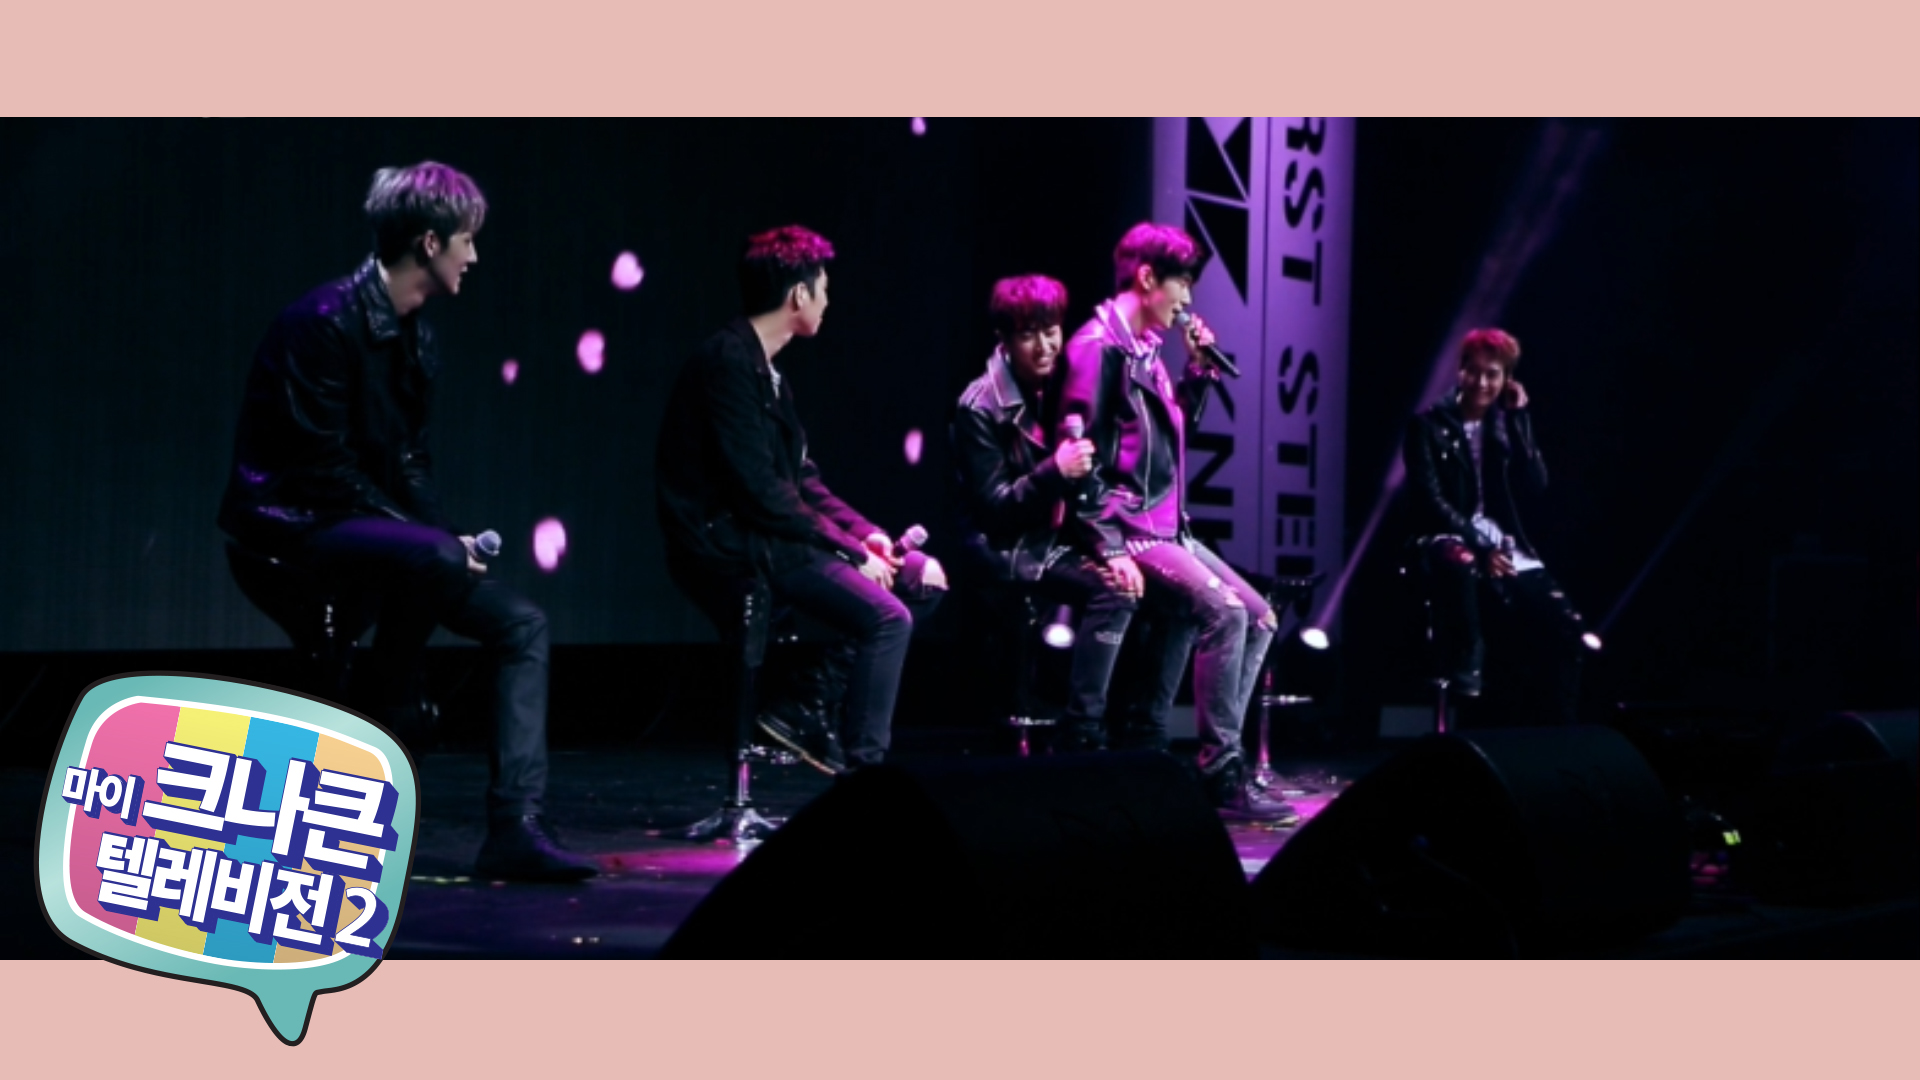 [마이 크나큰 텔레비전2] #05 크나큰(KNK) LIVE & MEET in Seoul